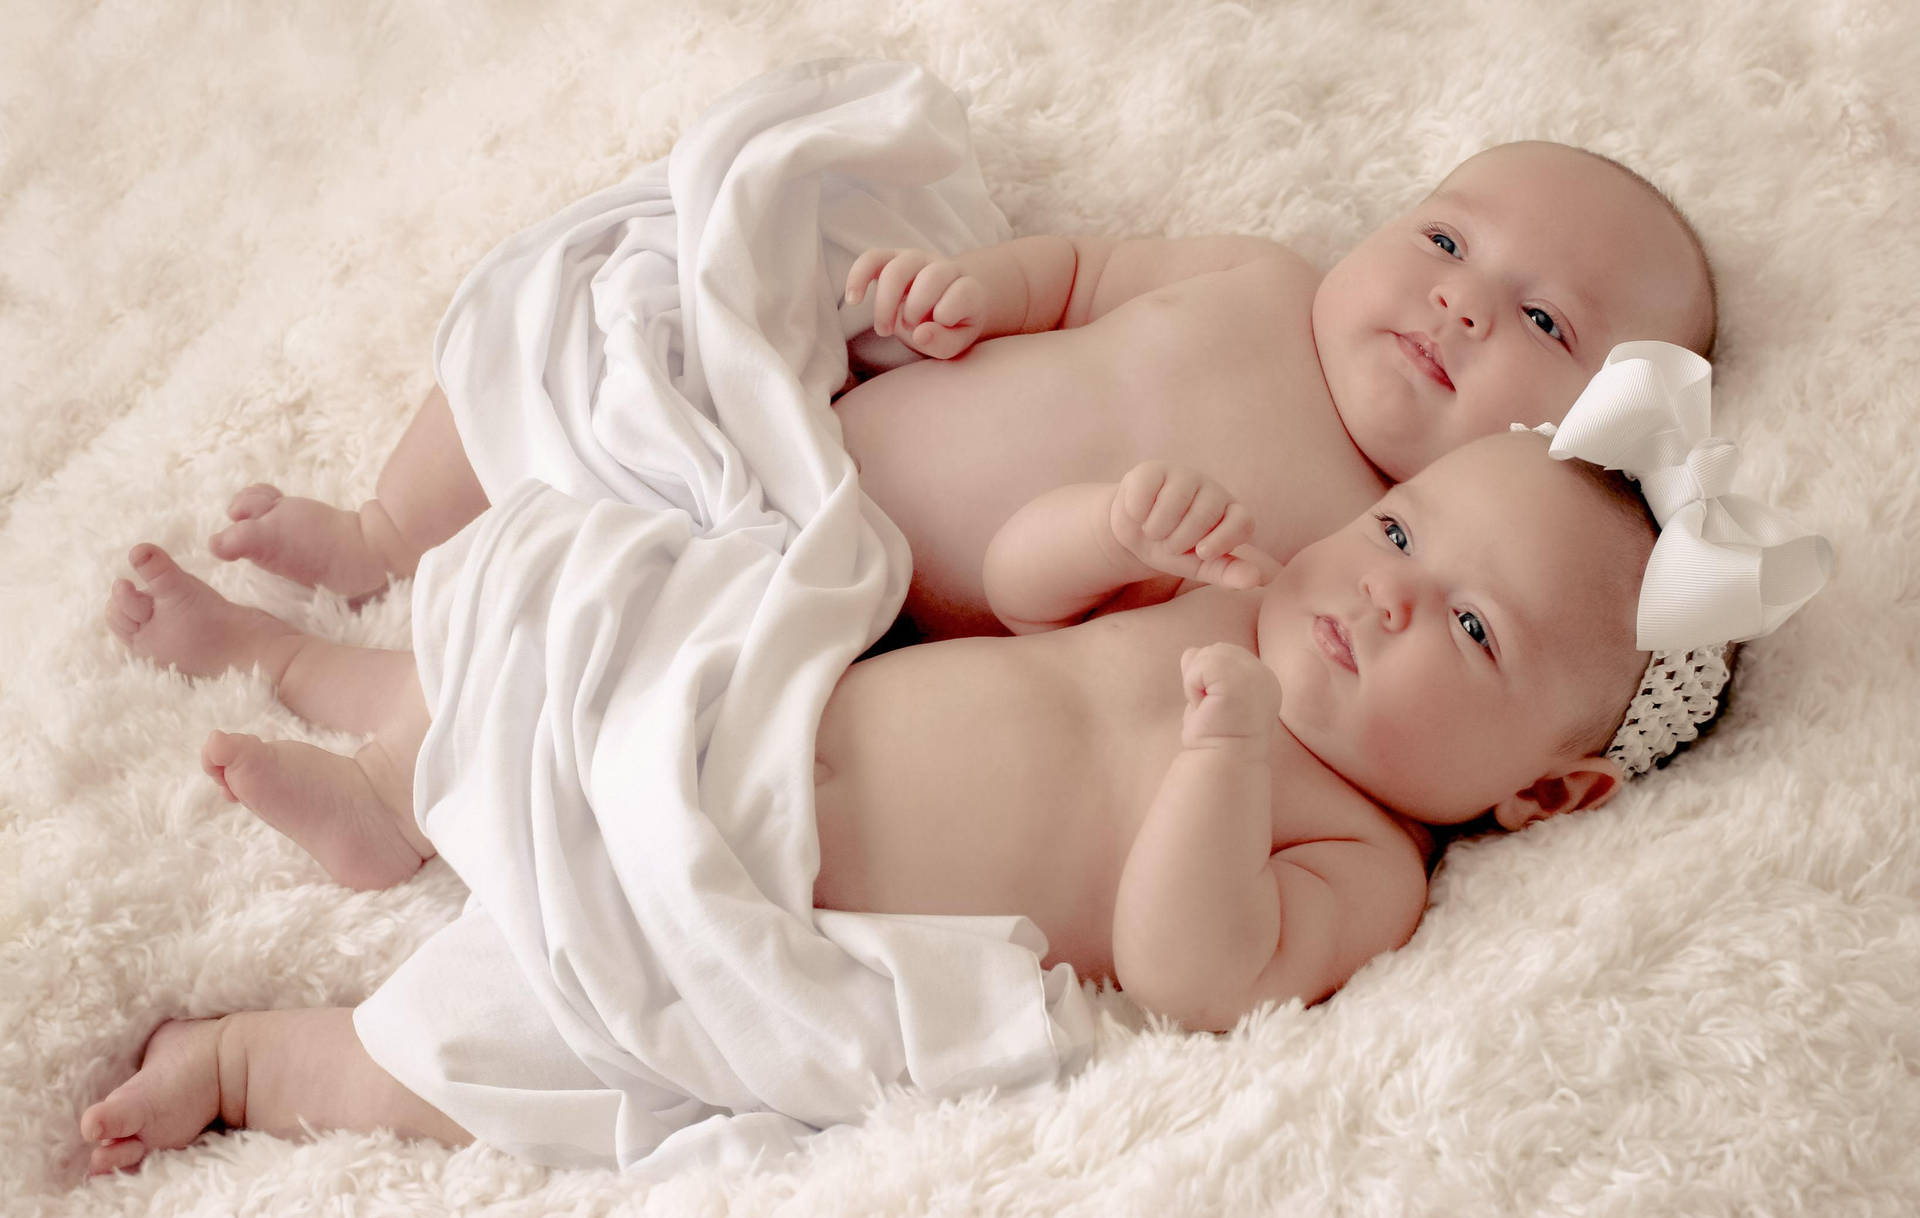 35364 Twin Babies Images Stock Photos  Vectors  Shutterstock